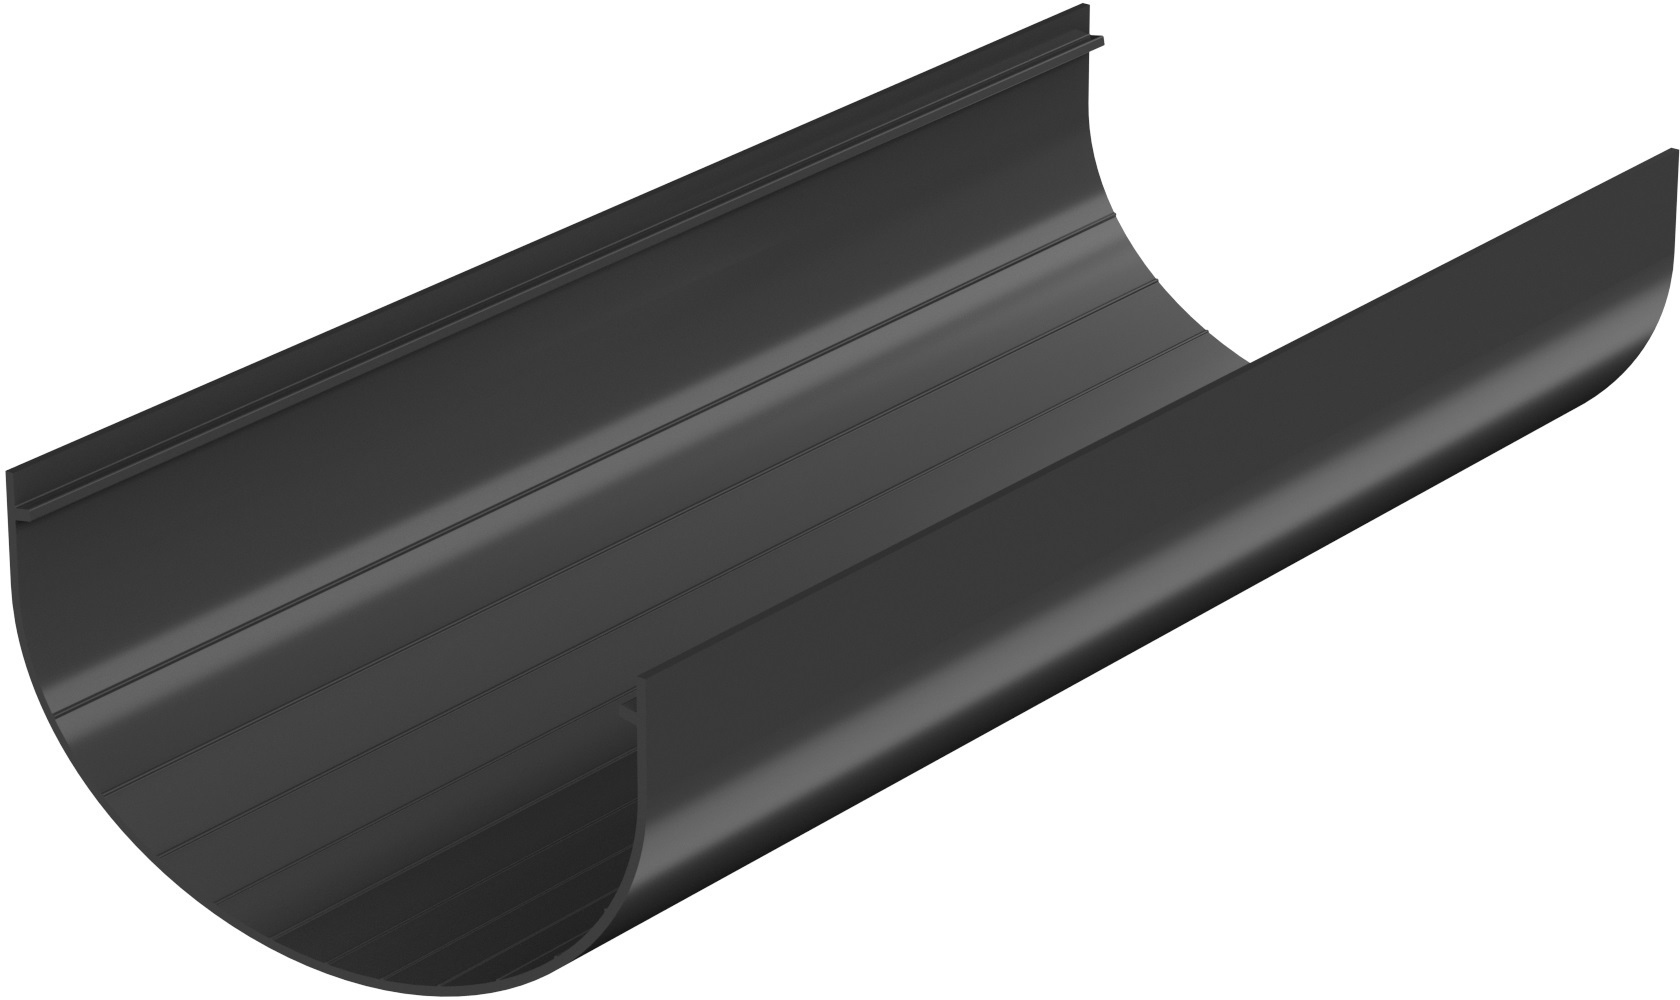  водосточный Технониколь Оптима 120 мм 3 м цвет черный  .